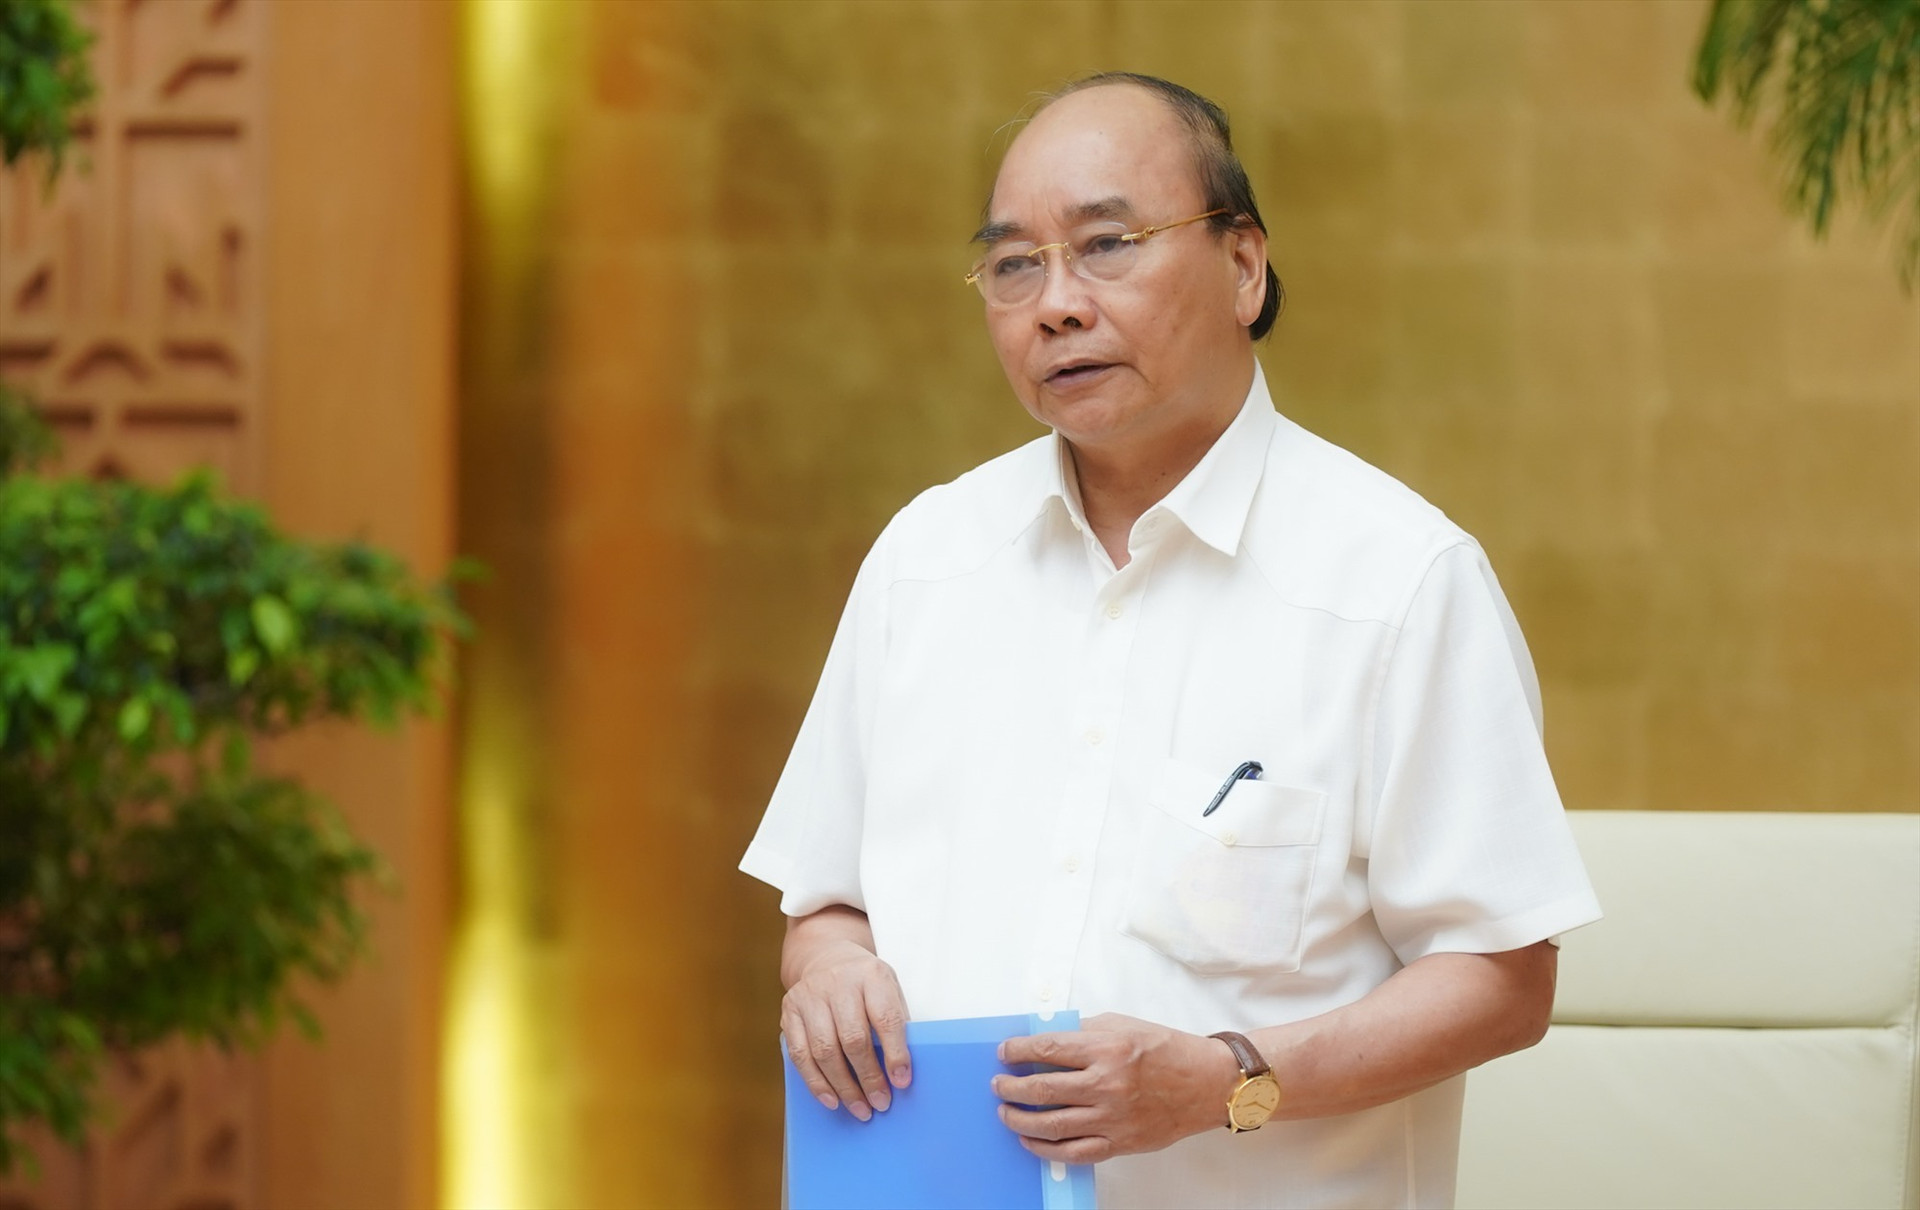 Thủ tướng Nguyễn Xuân Phúc nhấn mạnh điều này trong phát biểu kết luận cuộc họp Thường trực Chính phủ về phòng, chống dịch bệnh COVID-19 vào sáng nay, 7/5.